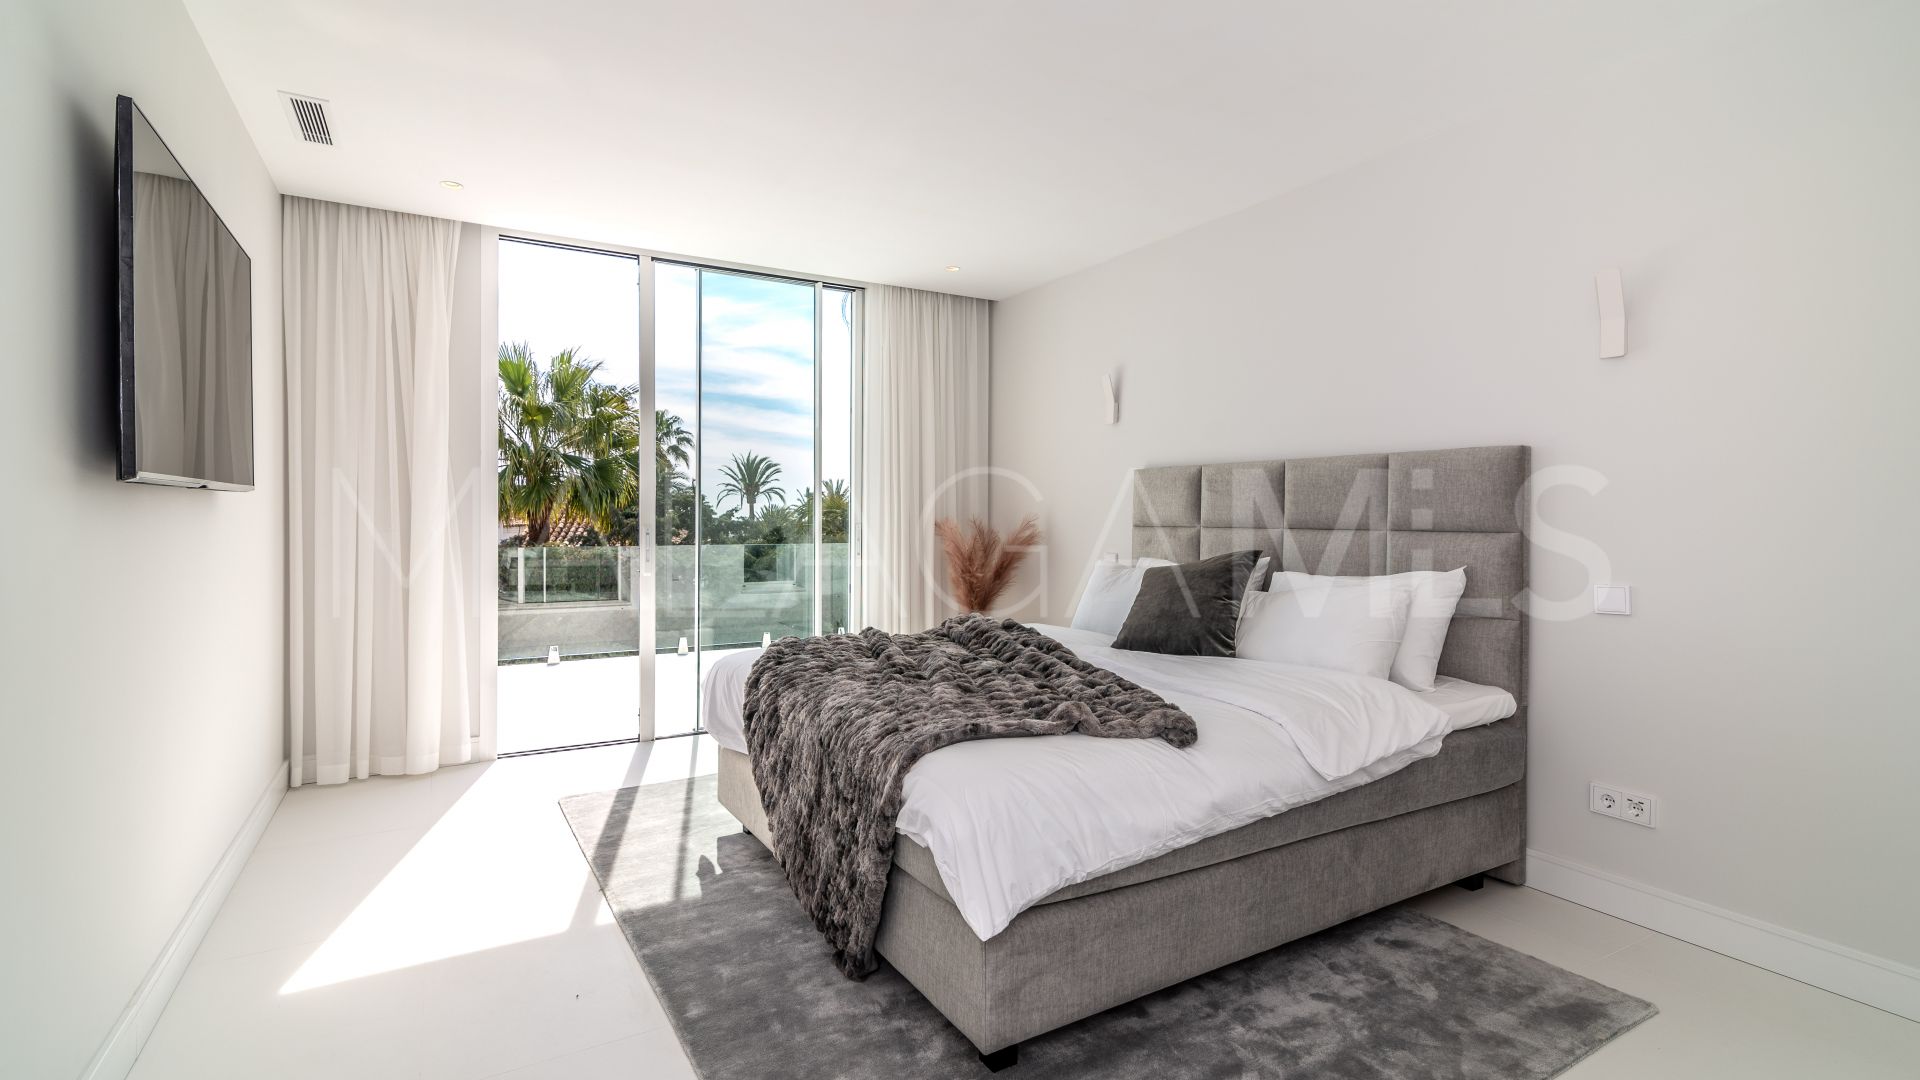 Villa for sale in Marbella - Puerto Banus with 8 bedrooms